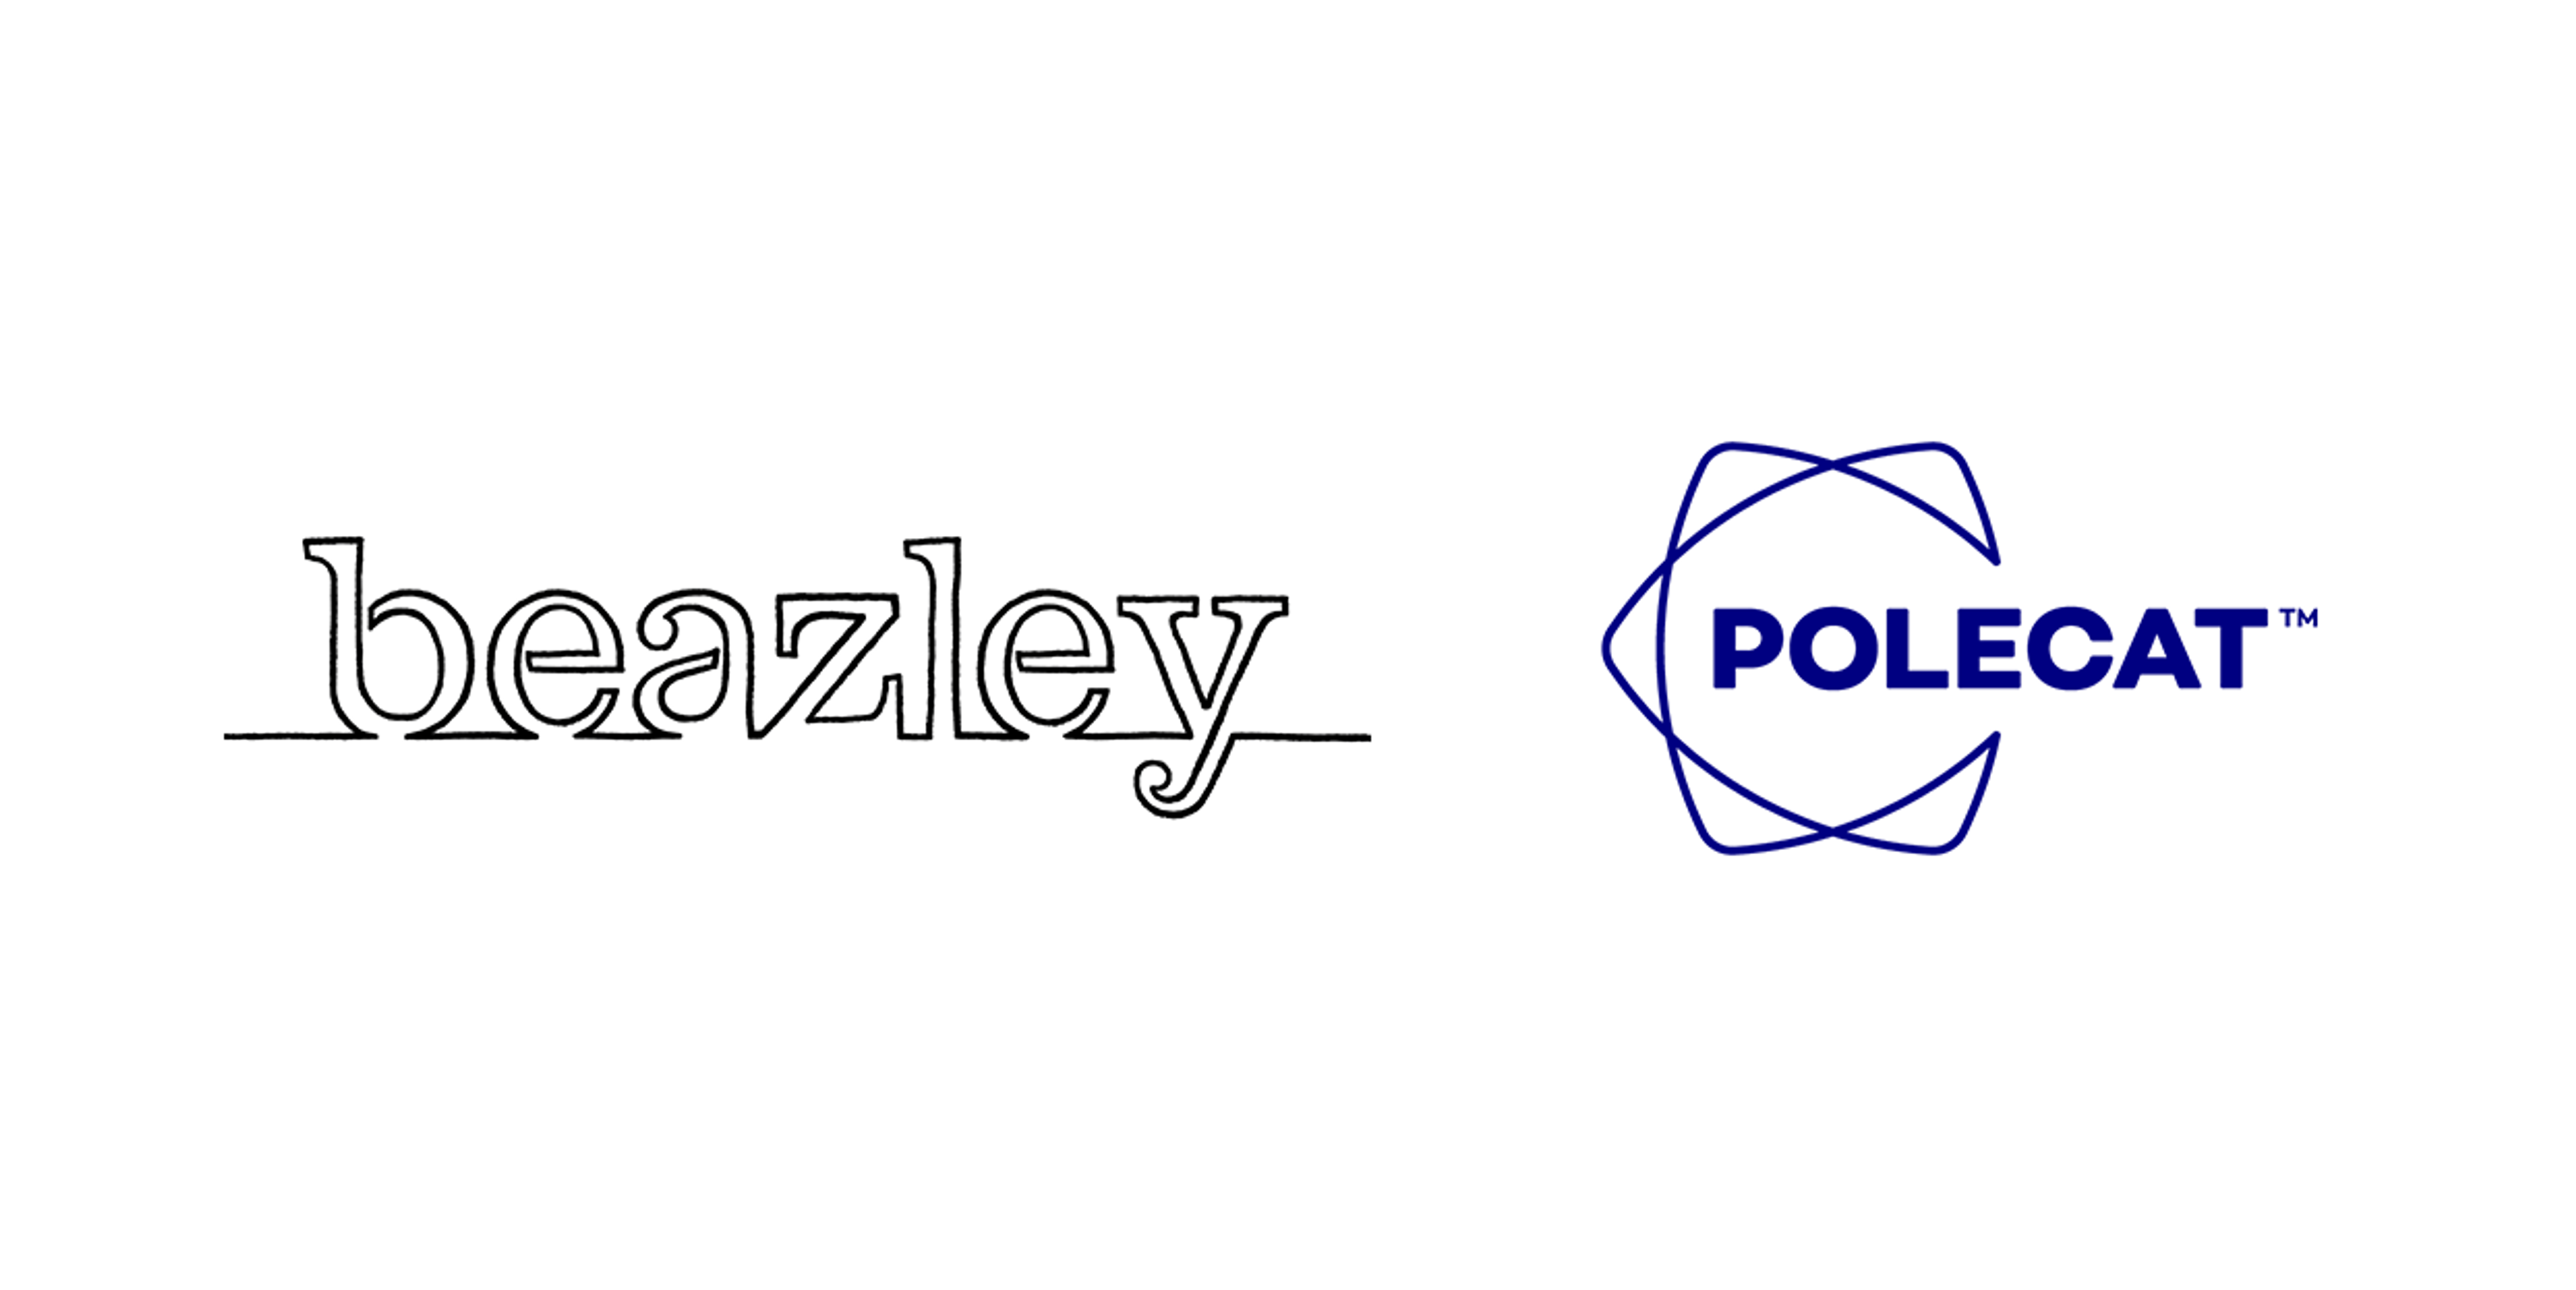 A Beazley and Polecat logos